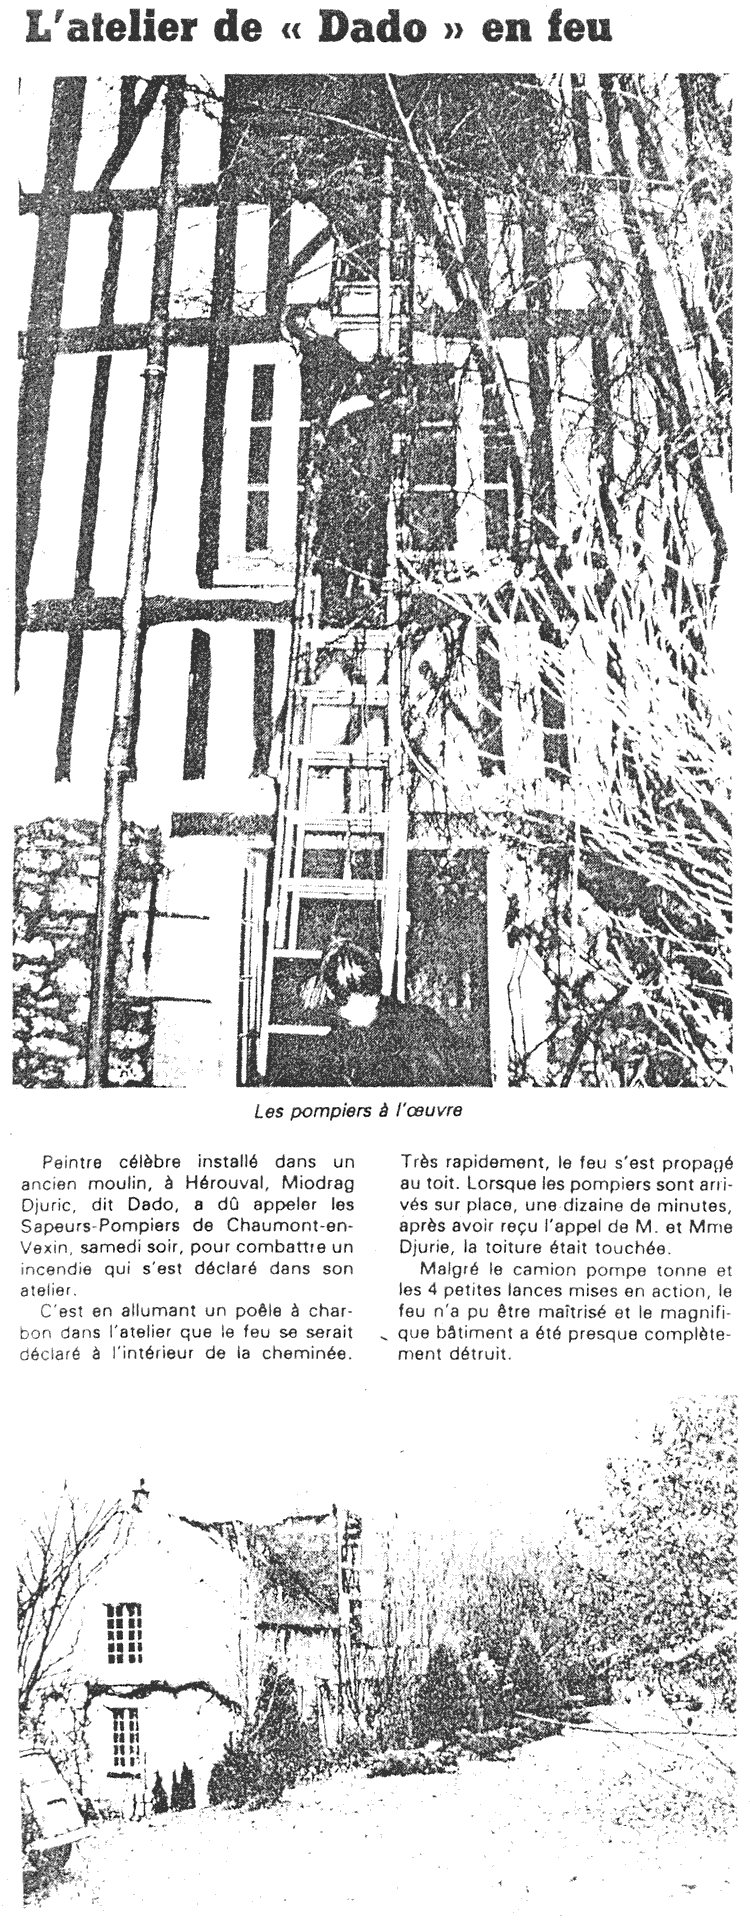 Article de l’Impartial sur l’incendie de l’atelier d’Hérouval en 1988